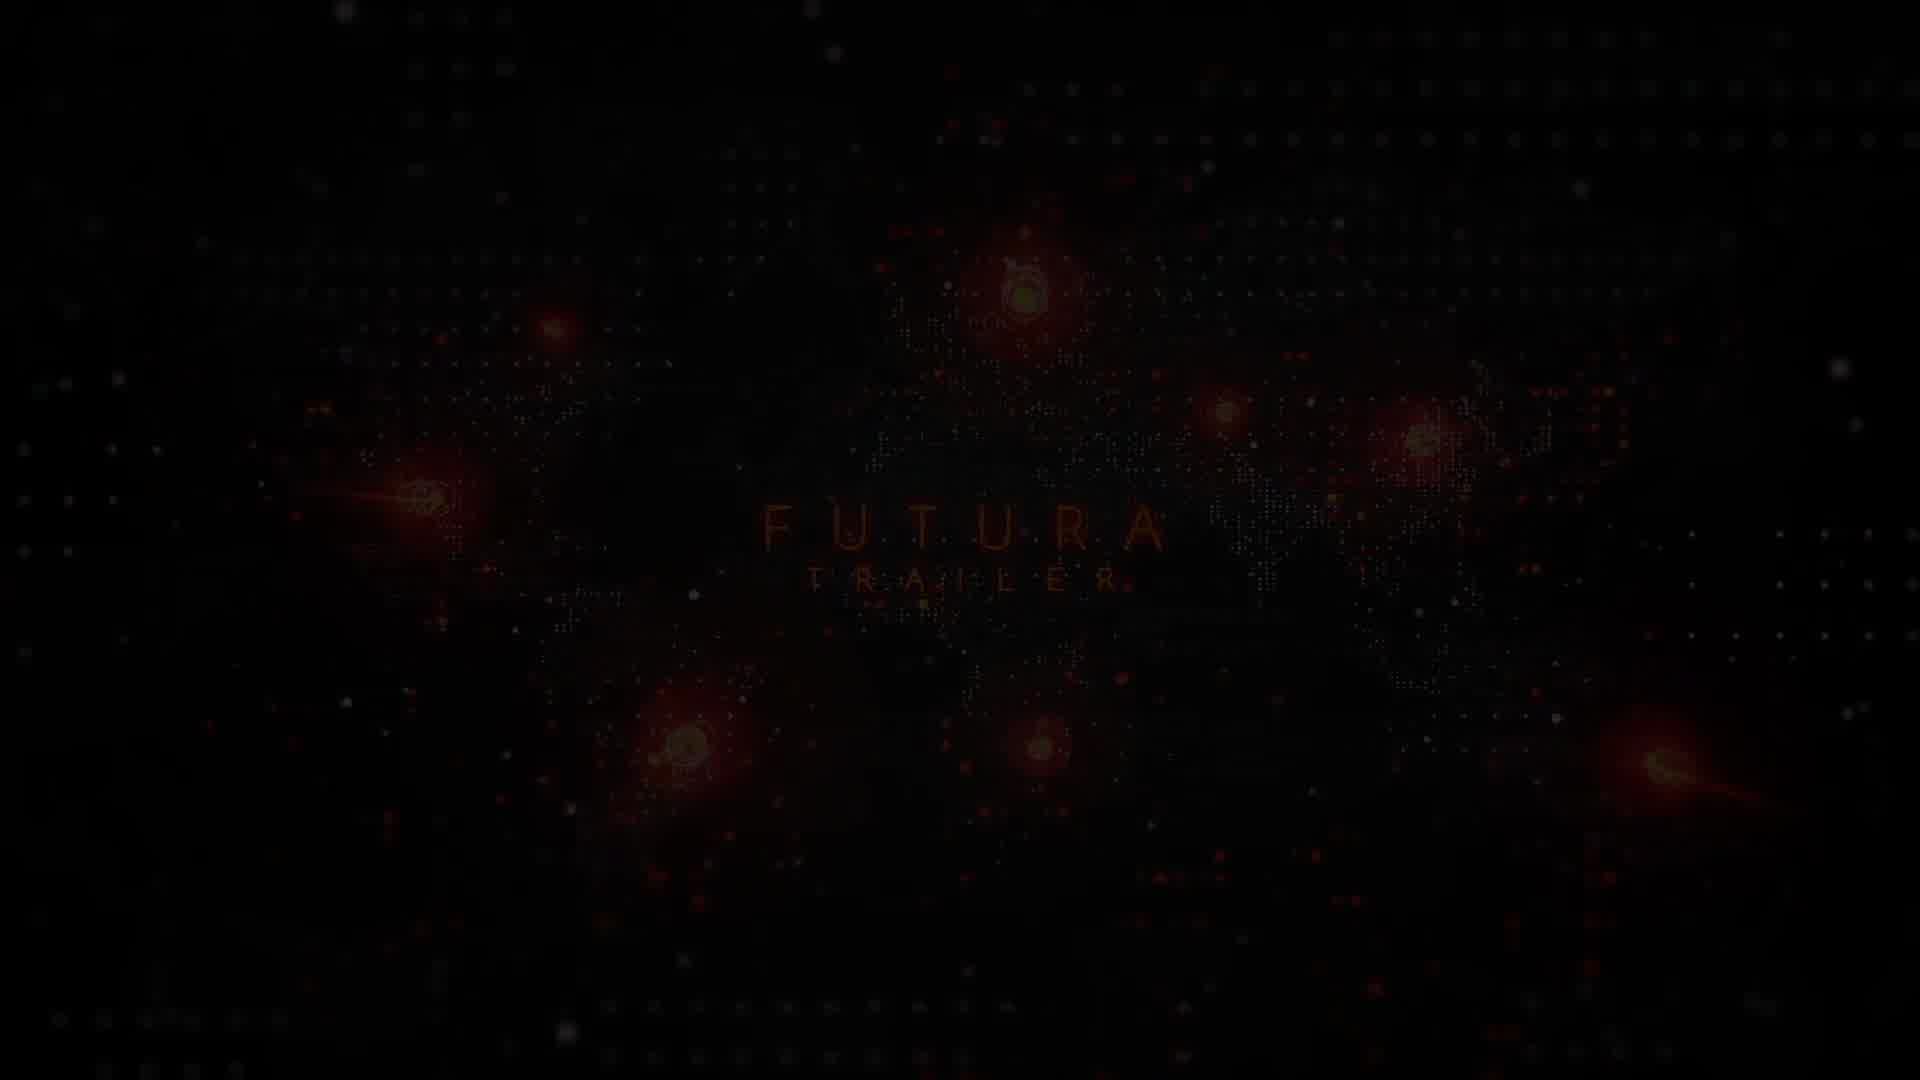 Futura Trailer - Download Videohive 21499385